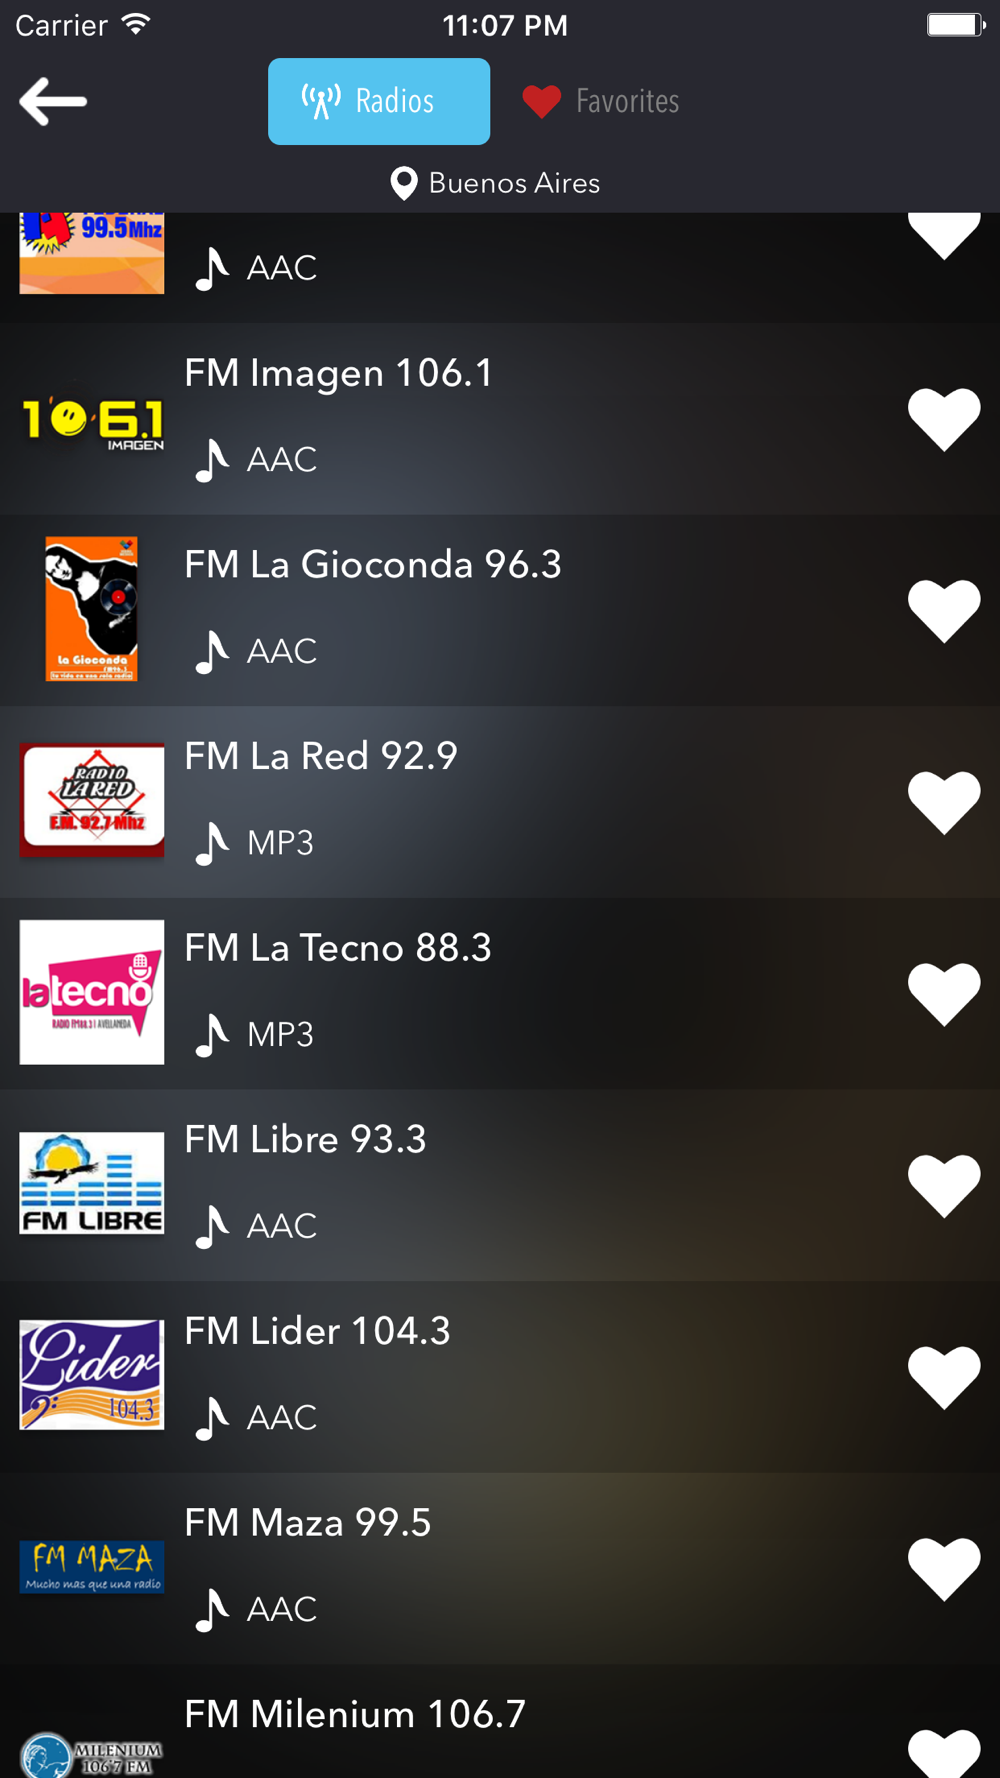 Radios de Argentina Gratis Radio FM AM Tune Free Download App for iPhone -  STEPrimo.com